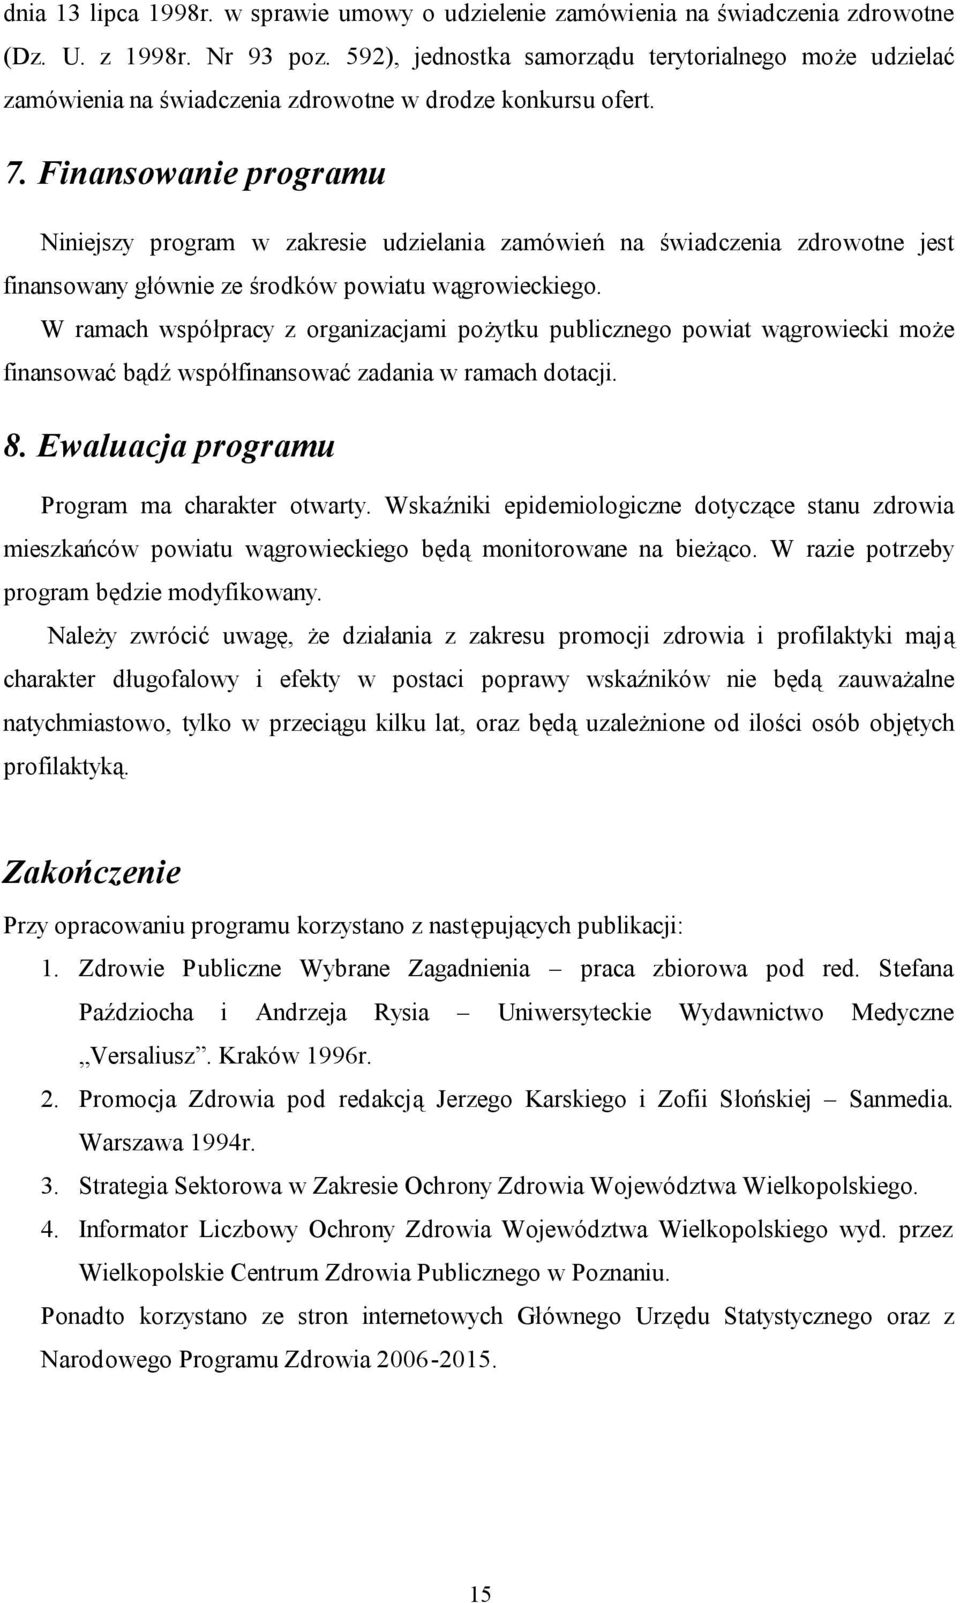 Finansowanie programu Niniejszy program w zakresie udzielania zamówień na świadczenia zdrowotne jest finansowany głównie ze środków powiatu wągrowieckiego.